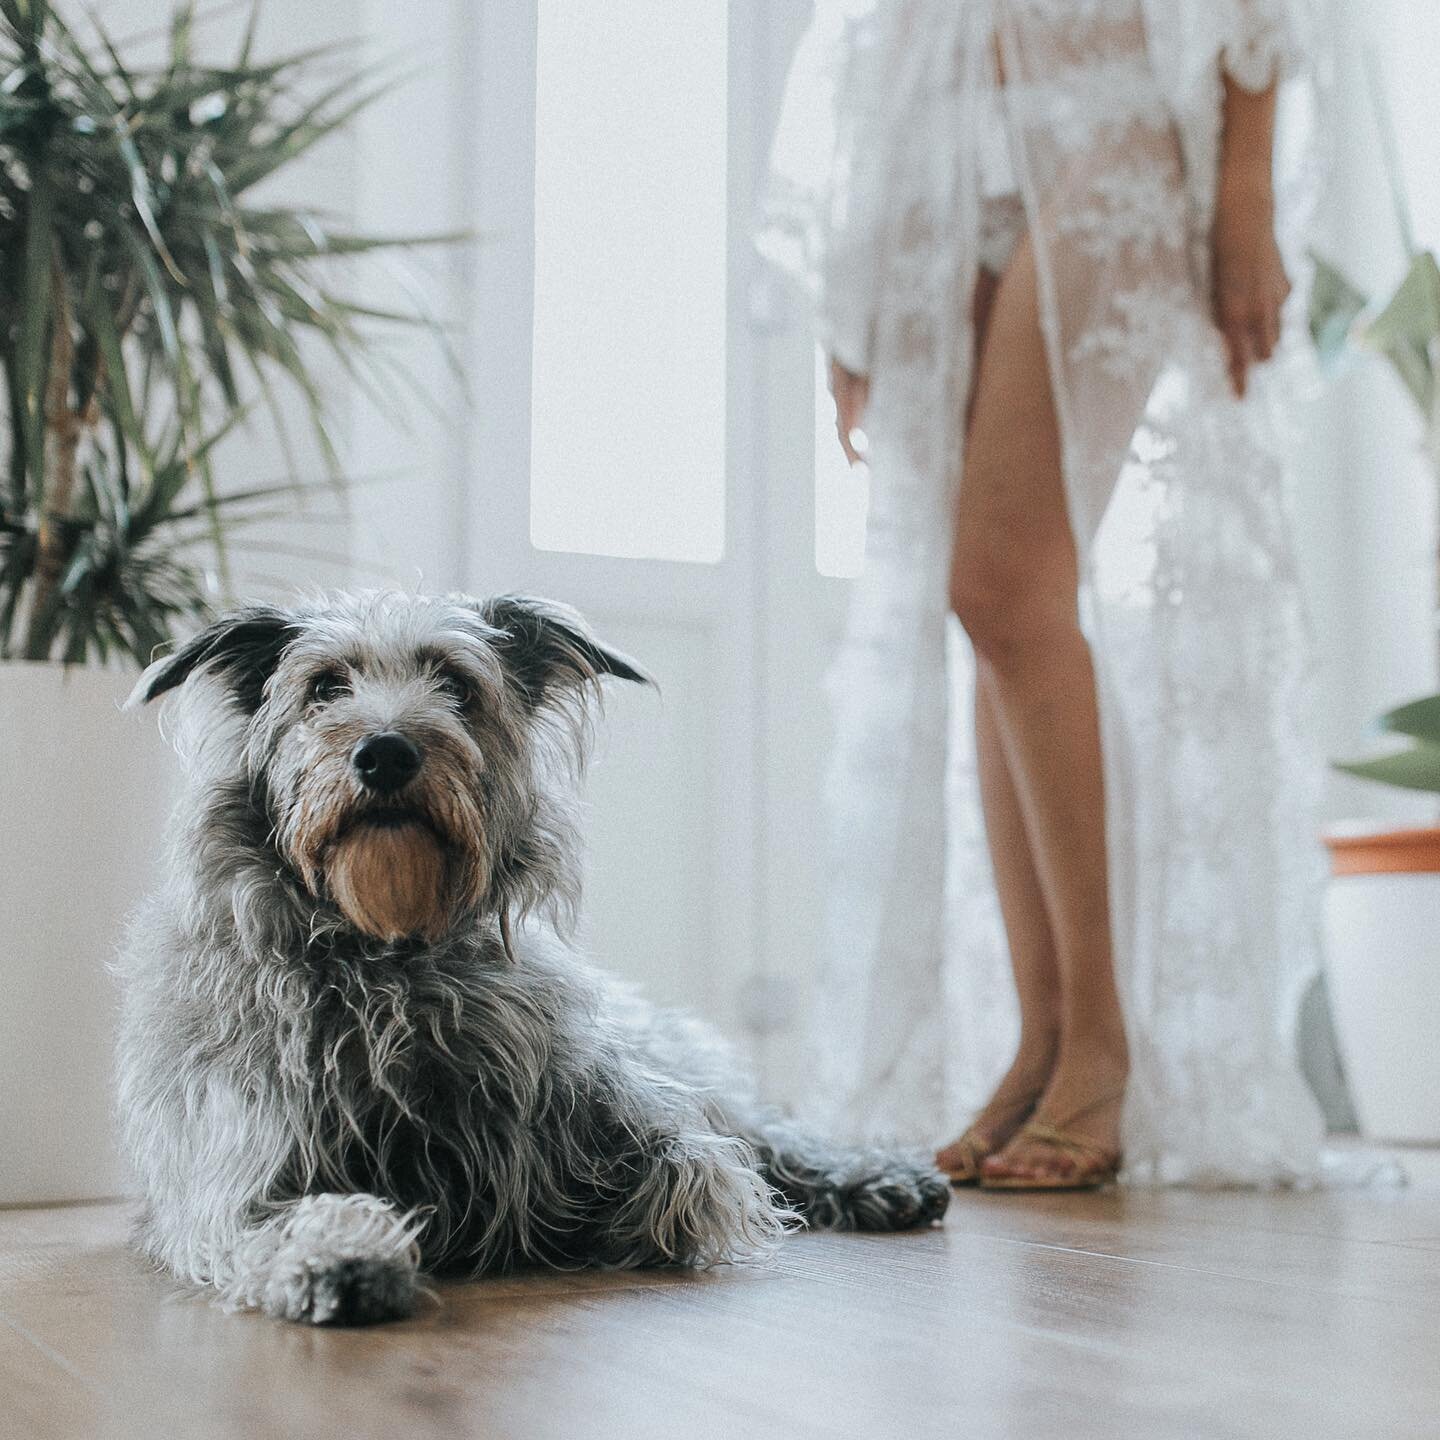 Para nosotros, las mejores #bodas son esas en las que podemos hacer fotos a #noviasguapas y a #perrosguapos todo al mismo tiempo.
#weddingphotography #weddingphotographer #fotografosdebodas #fotografosvalencia #dog #doglife #doglifestyle #cute #bride